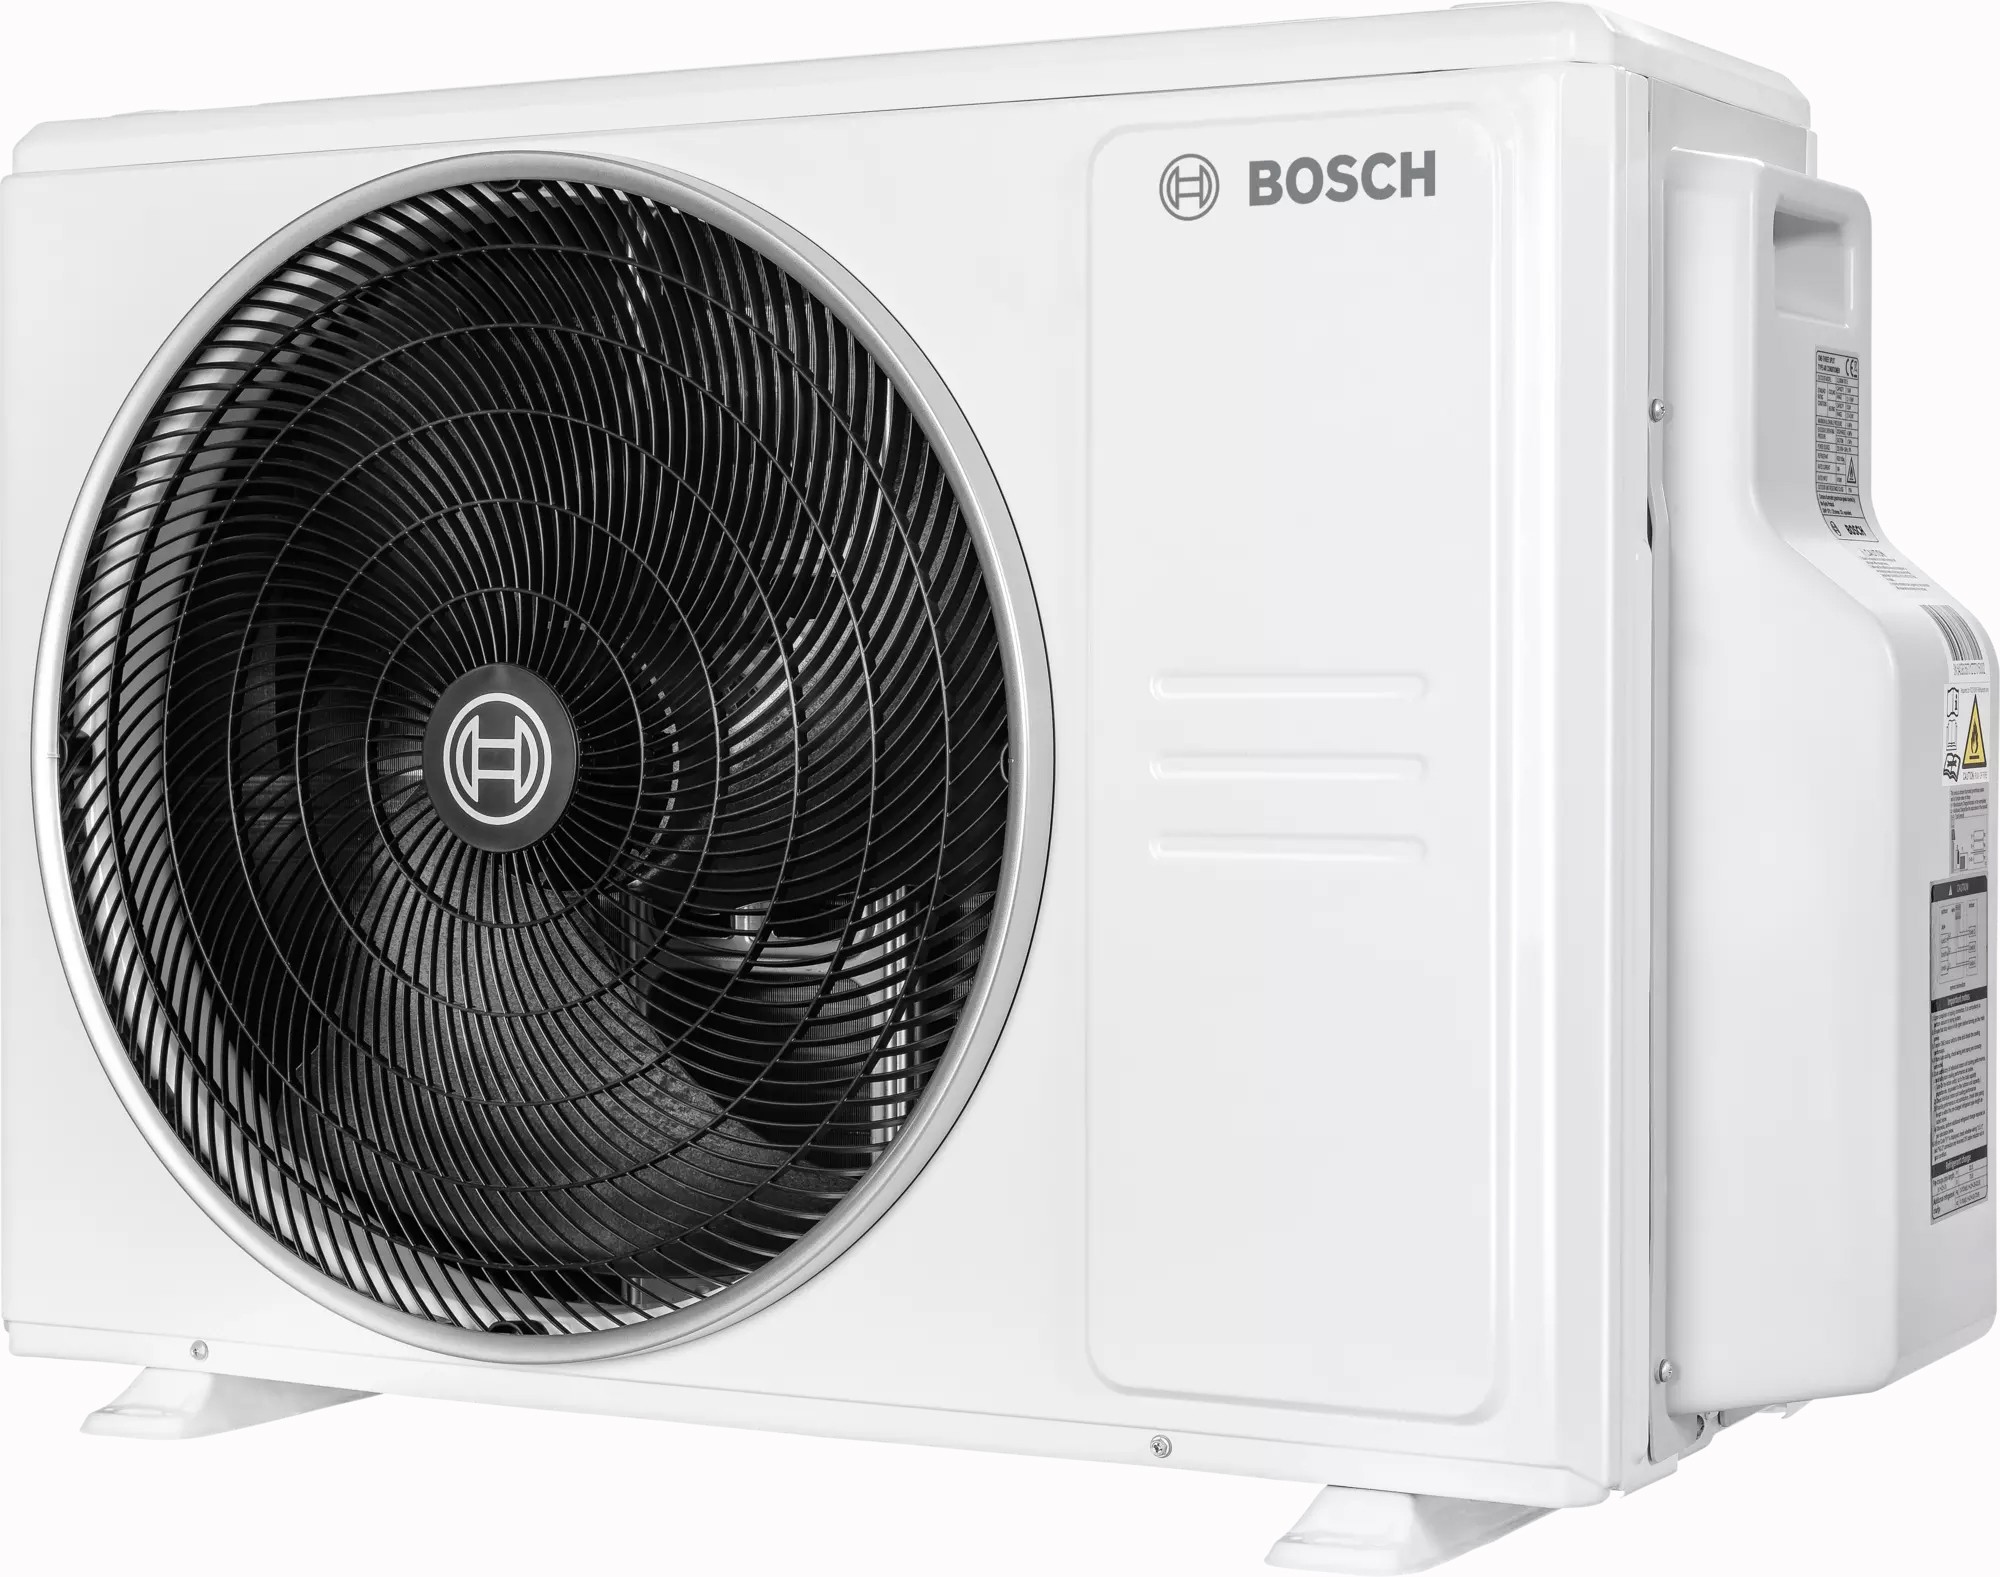 в продаже Наружный блок мультисплит-системы Bosch CL5000M 105/4 E, 10,5 кВт - фото 3